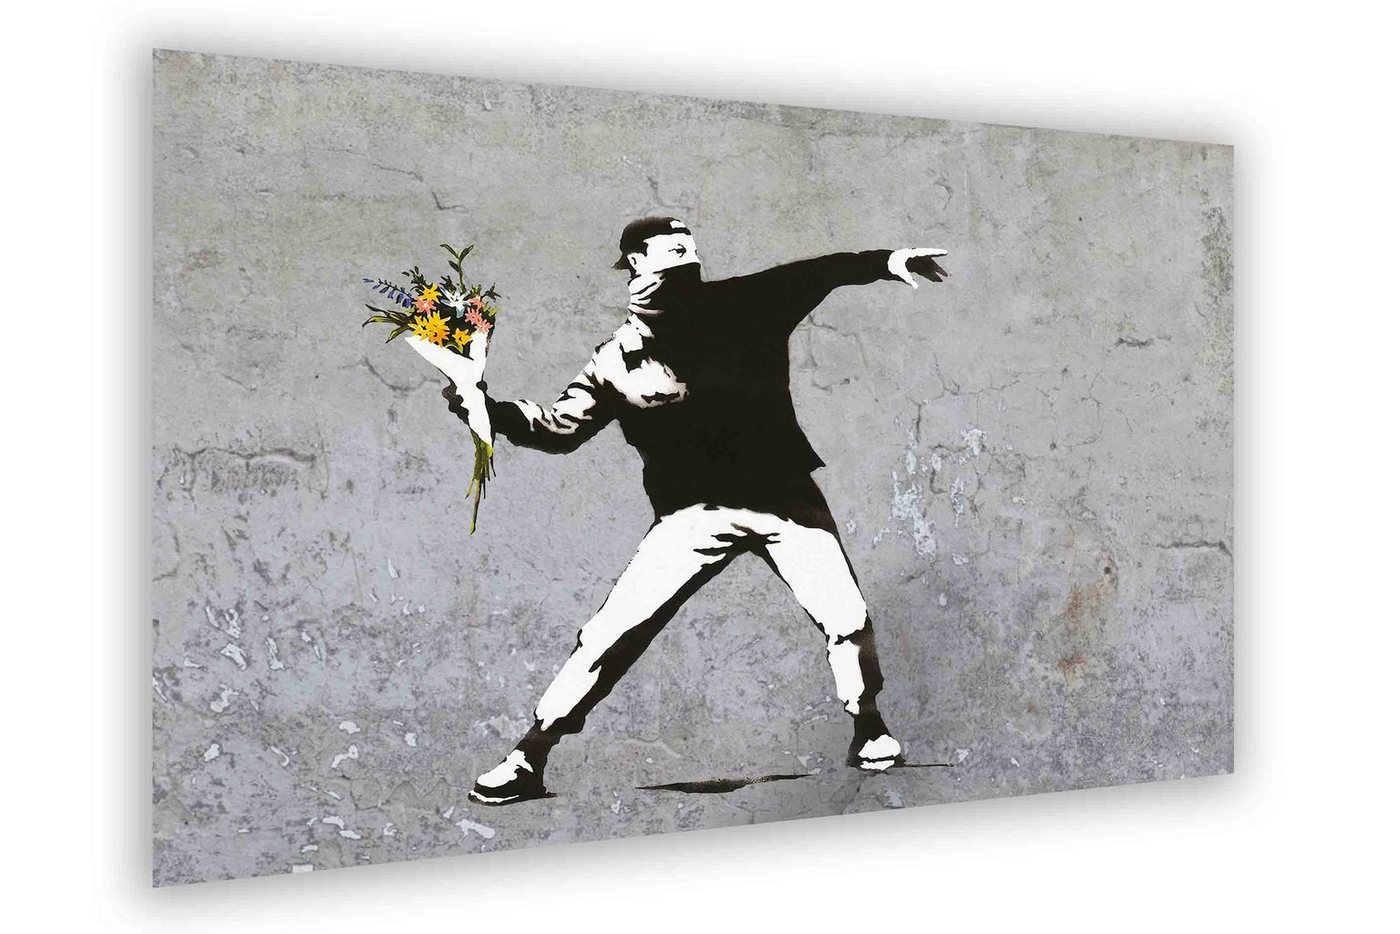 Leinwando Gemälde Banksy bilder Blumenwerfer Flowerriot grey hochkant / Leinwandbilder streetart Graffiti von Leinwando